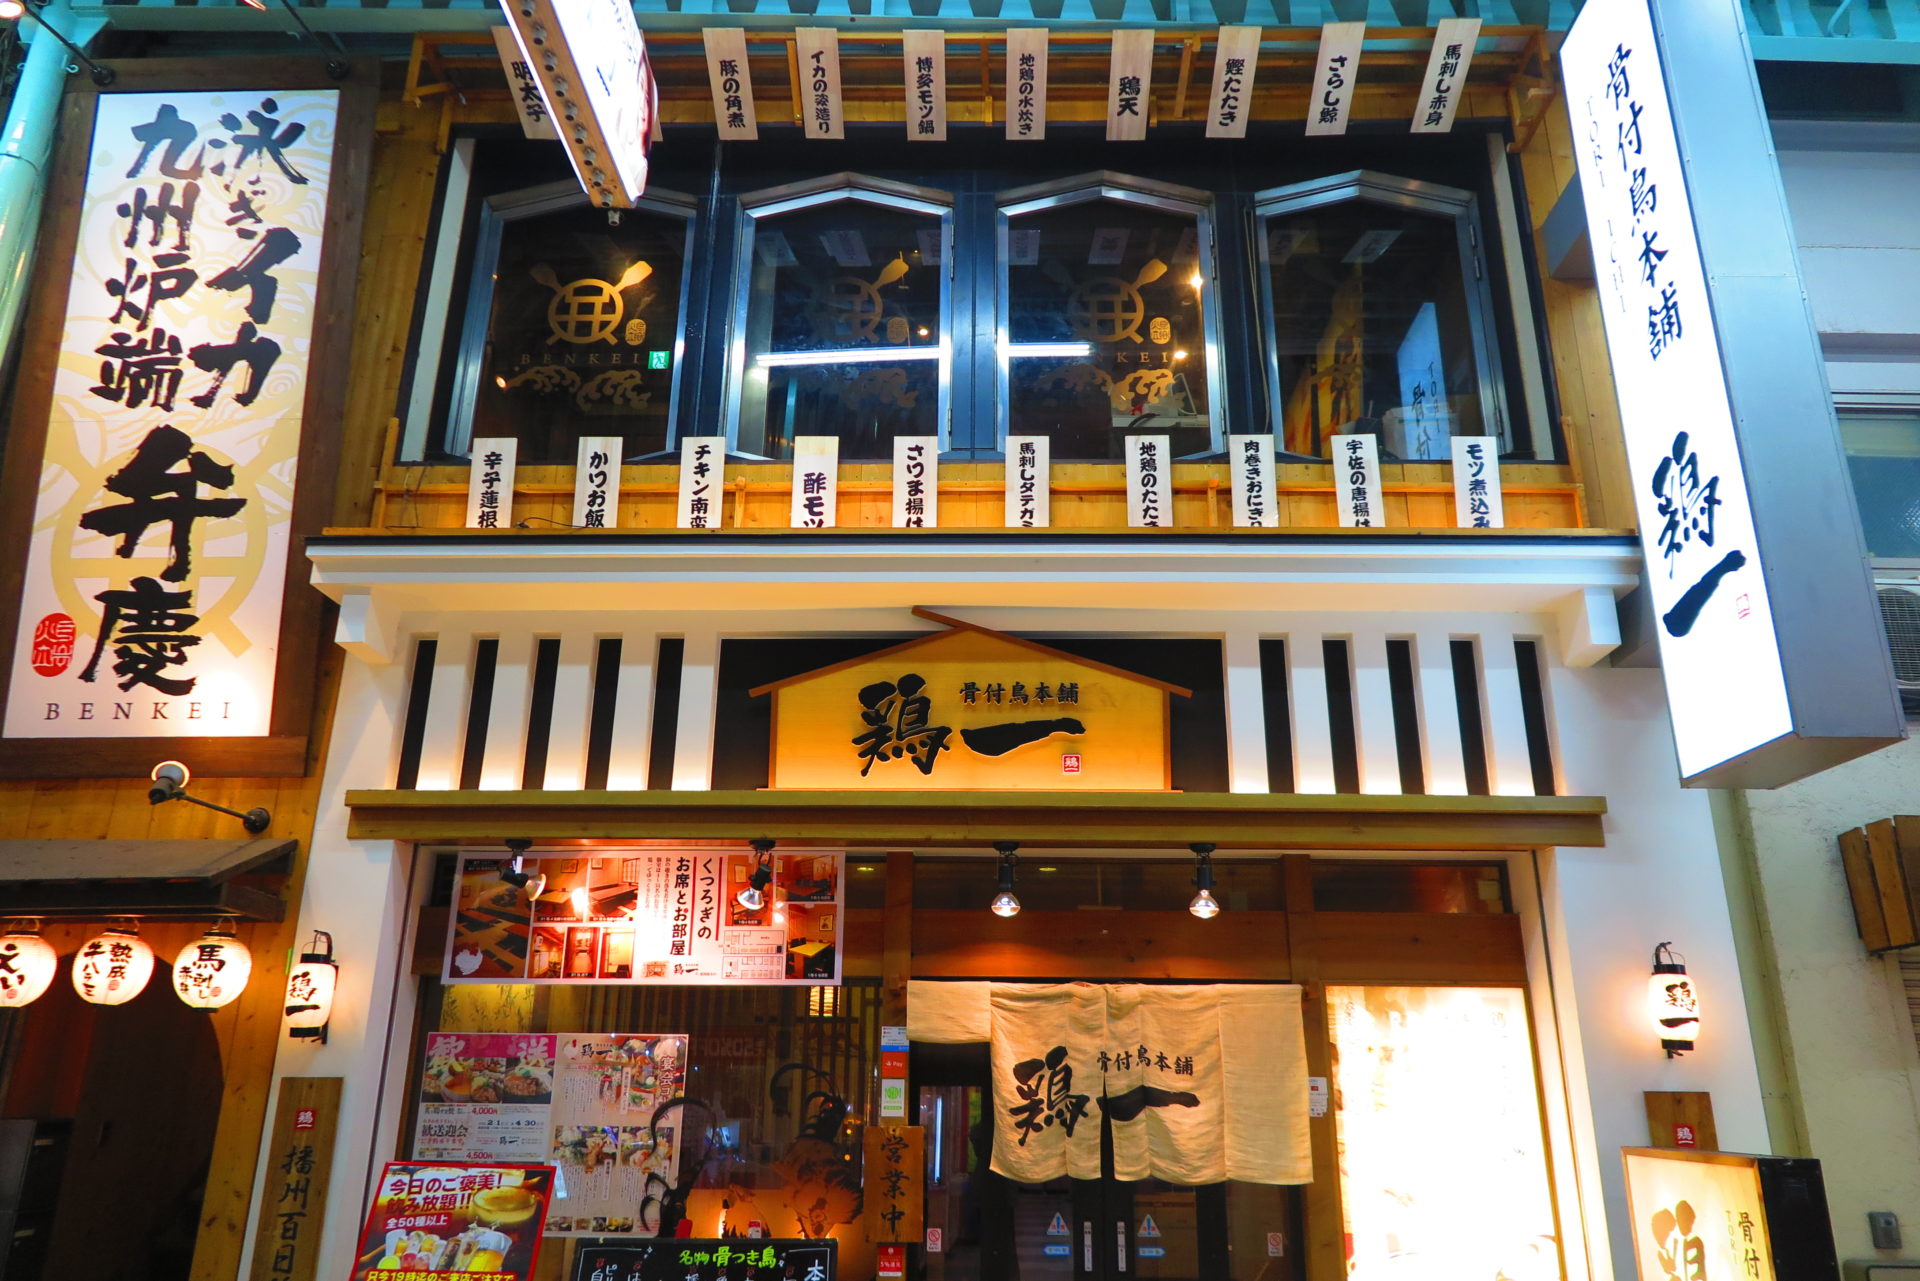 個室均一炉端焼き居酒屋えんば姫路駅前店が協和通りにオープンするみたい 姫路の種